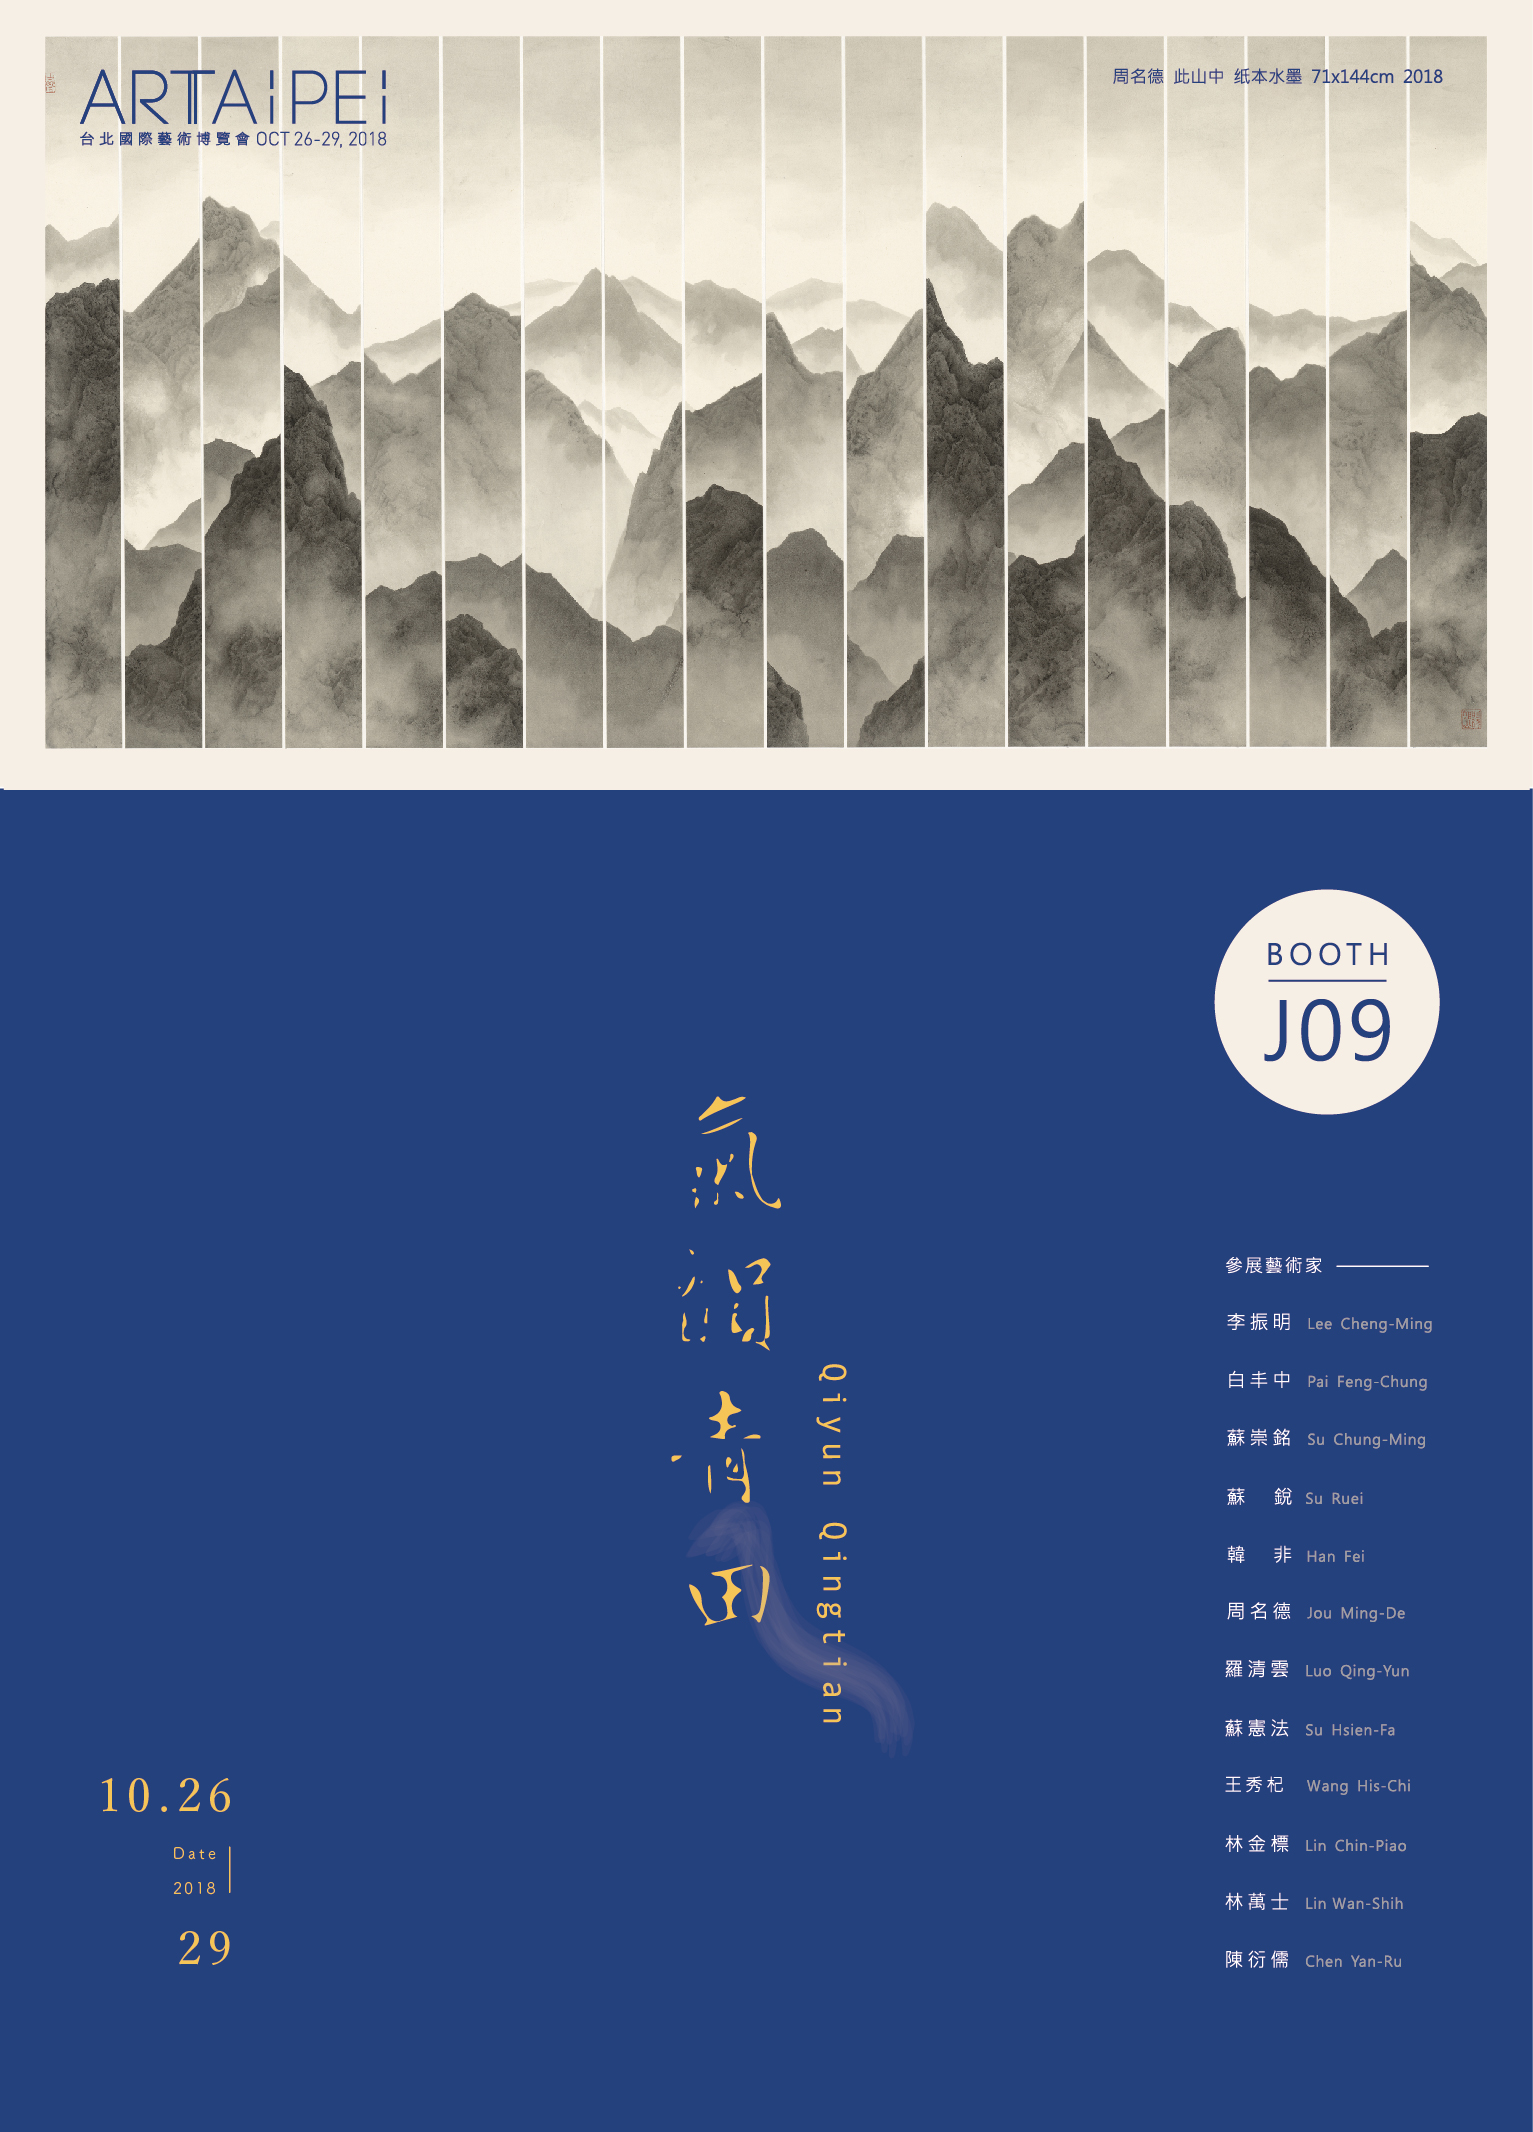 博藝畫廊 展位J09 - ART TAIPEI 2018 台北國際藝術博覽會